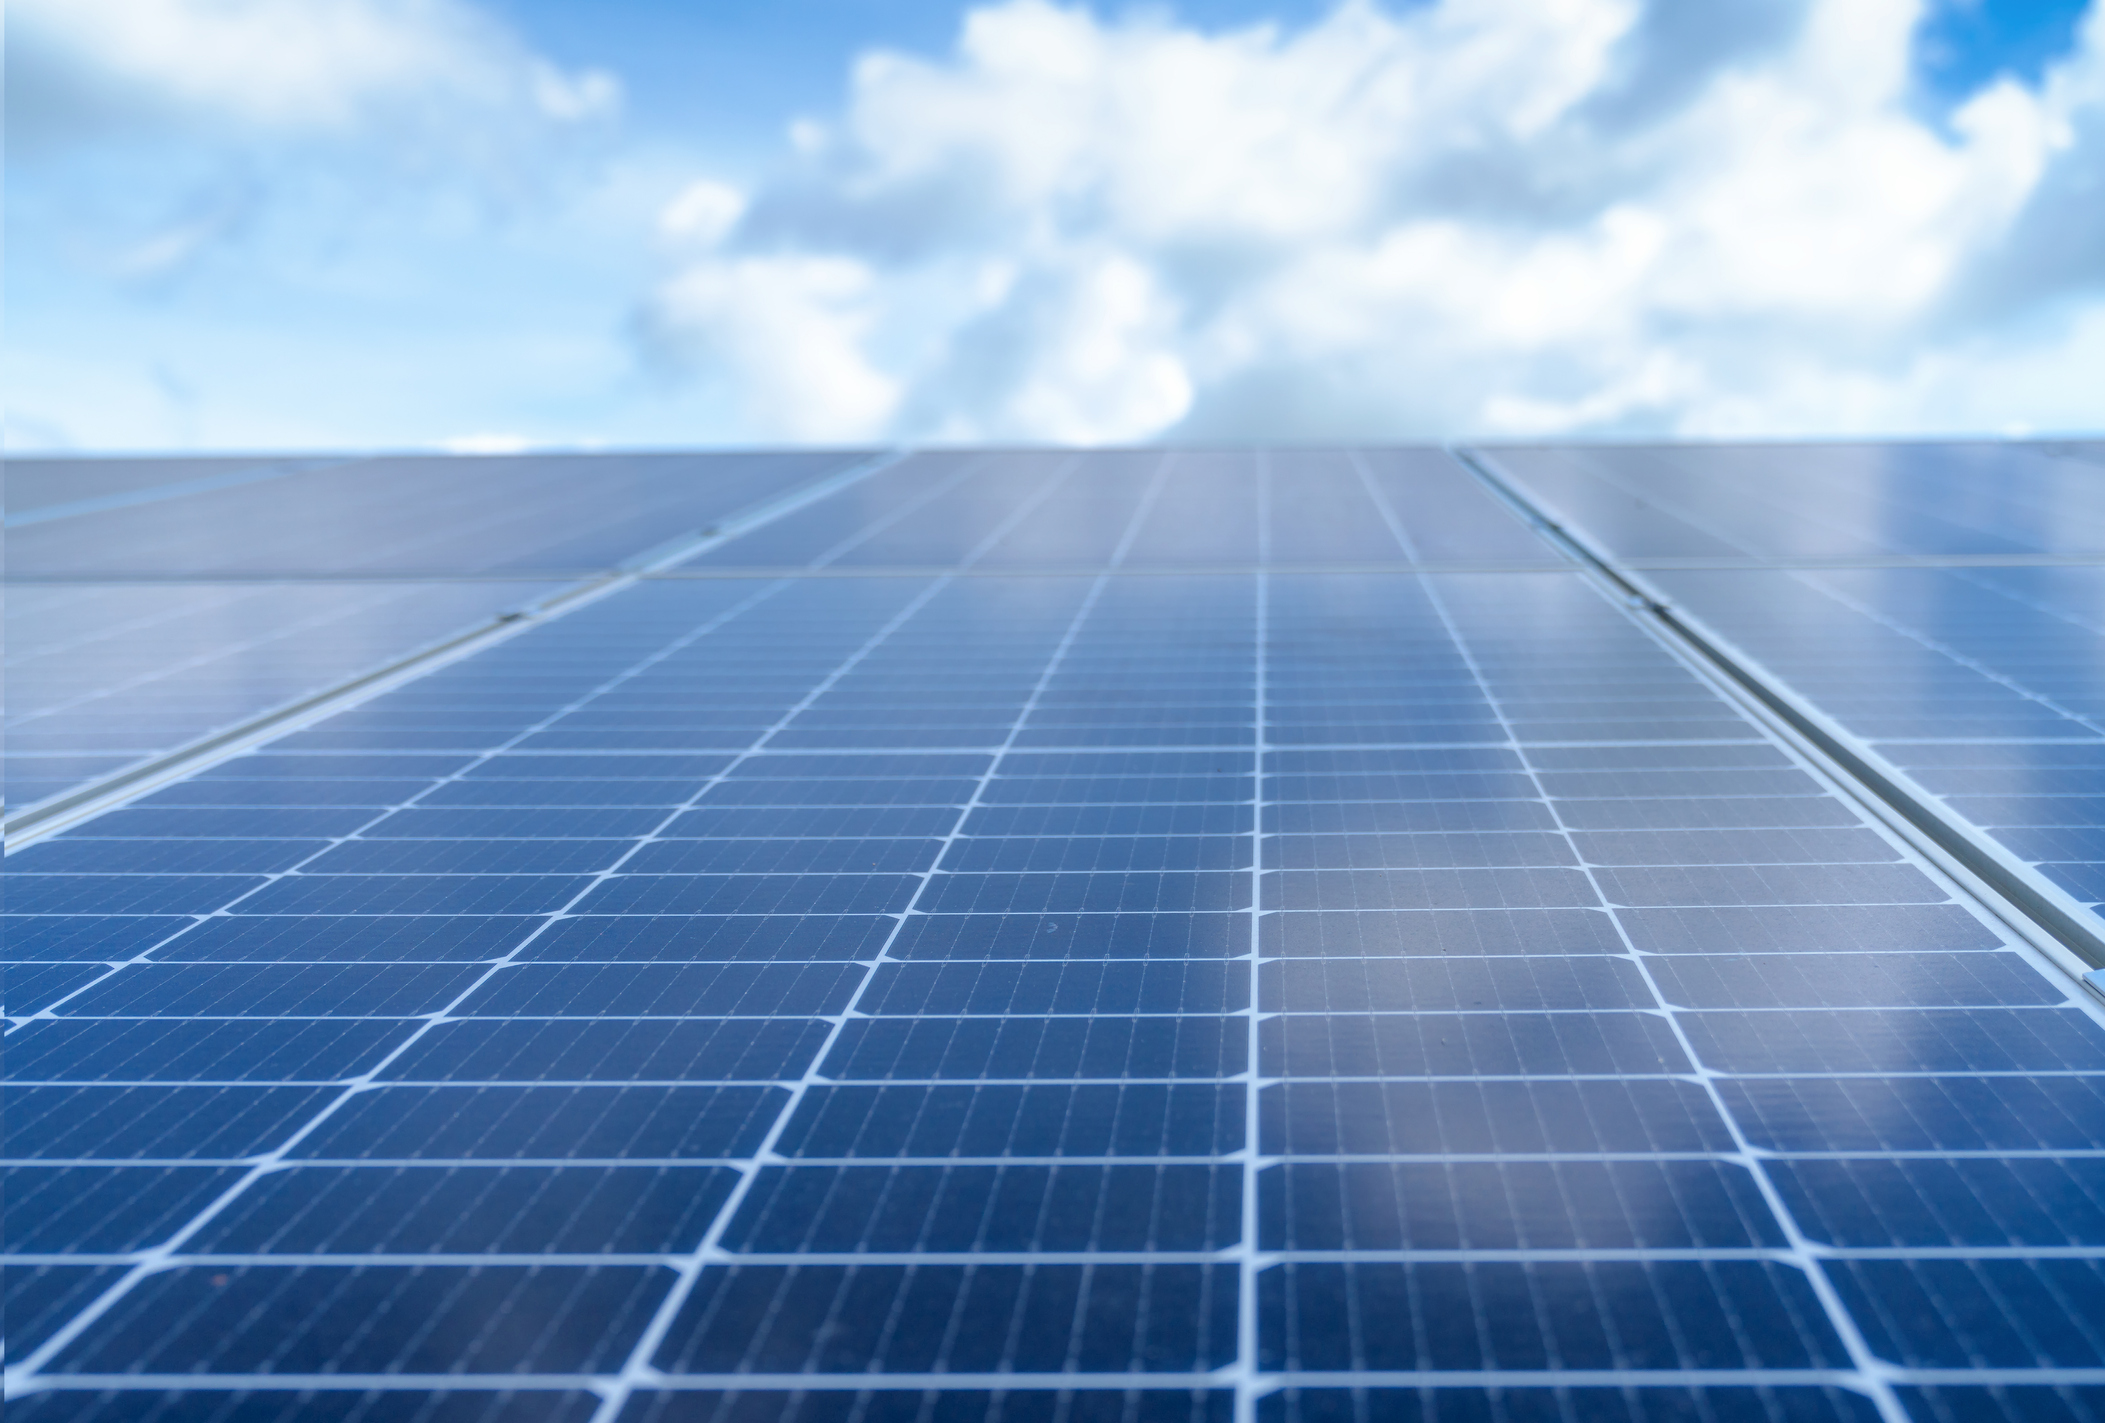 Apoyada por EIT InnoEnergy, Holosolis lanza la mayor gigafactoría solar fotovoltaica de Europa